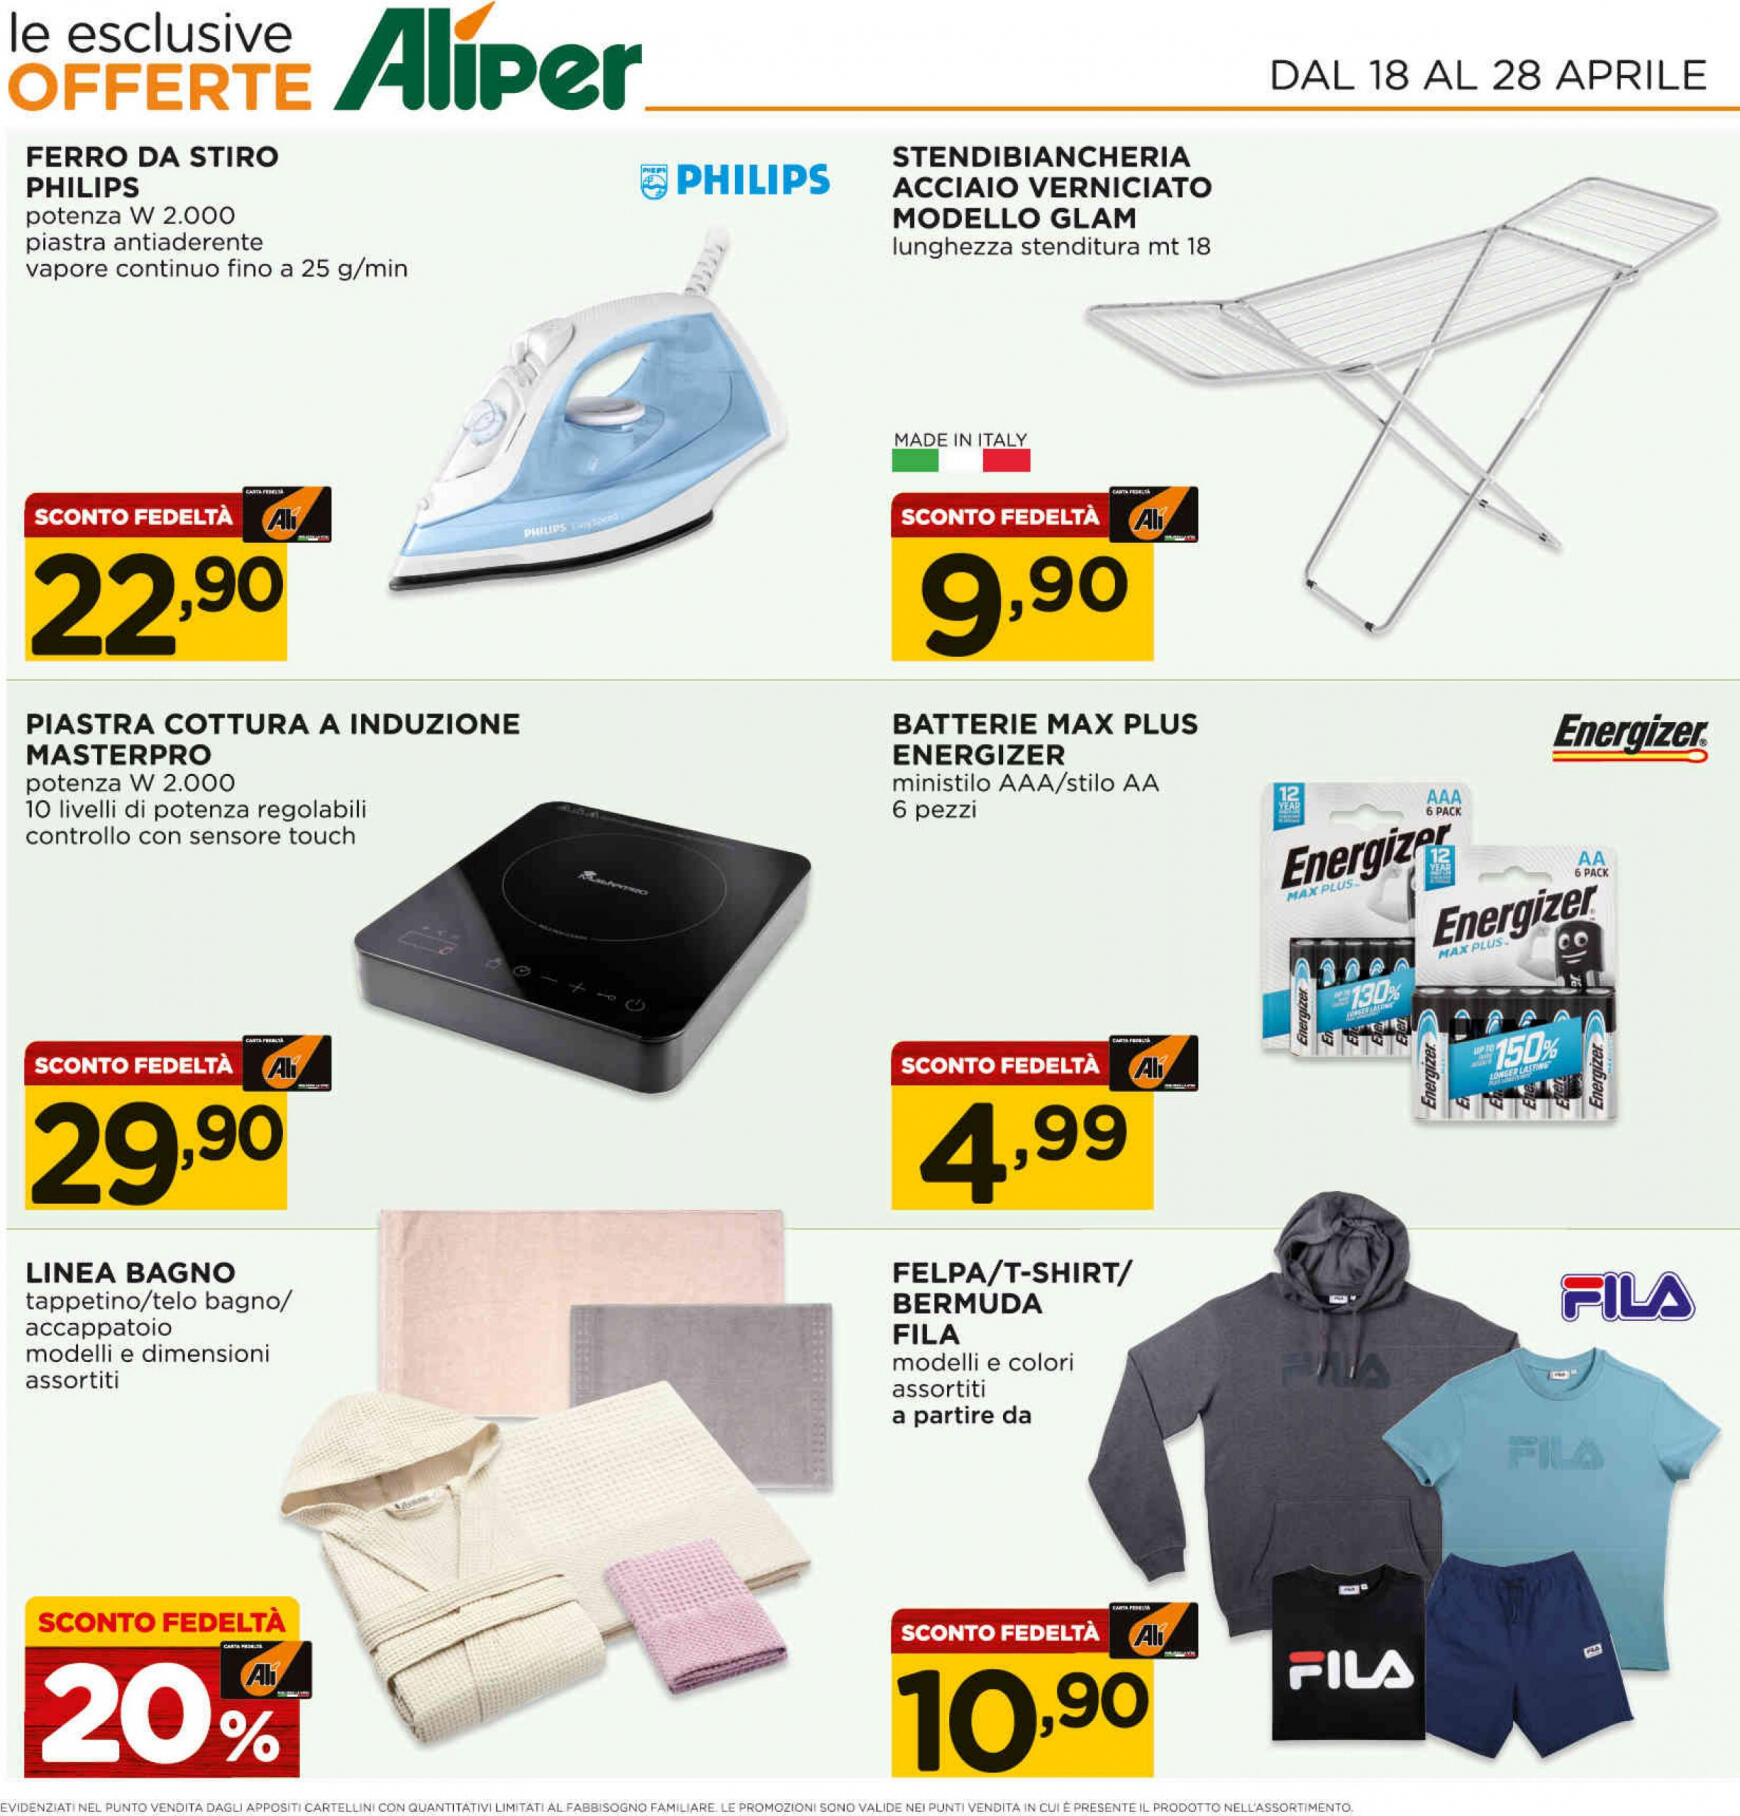 ali-aliper - Nuovo volantino Ali - Aliper - Prezzi al costo 18.04. - 28.04. - page: 15